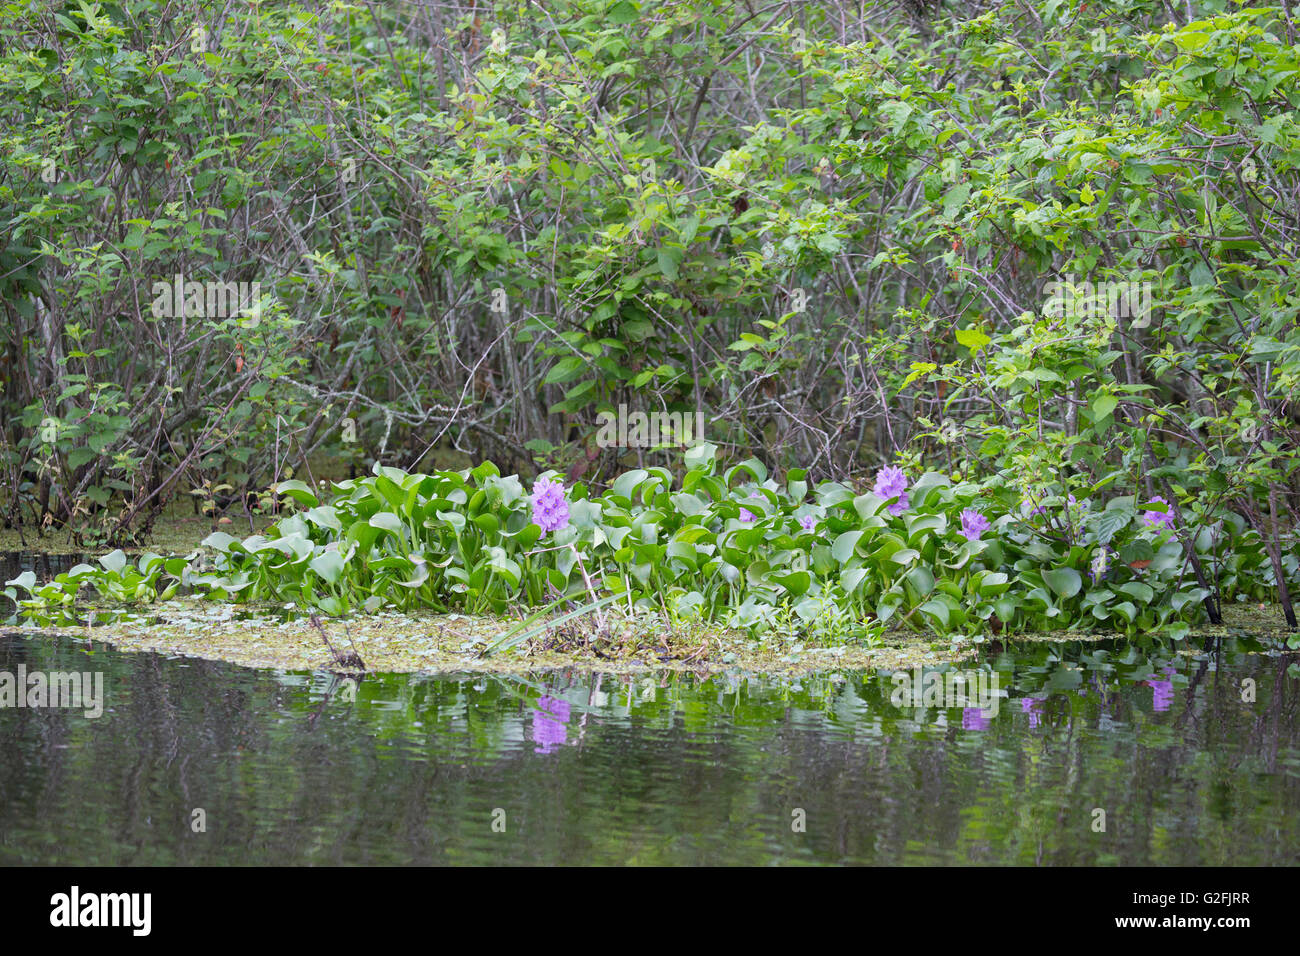 Zone de jacinthe d'eau (Eichhornia crassipes) en croissance dans un lac artificiel Banque D'Images